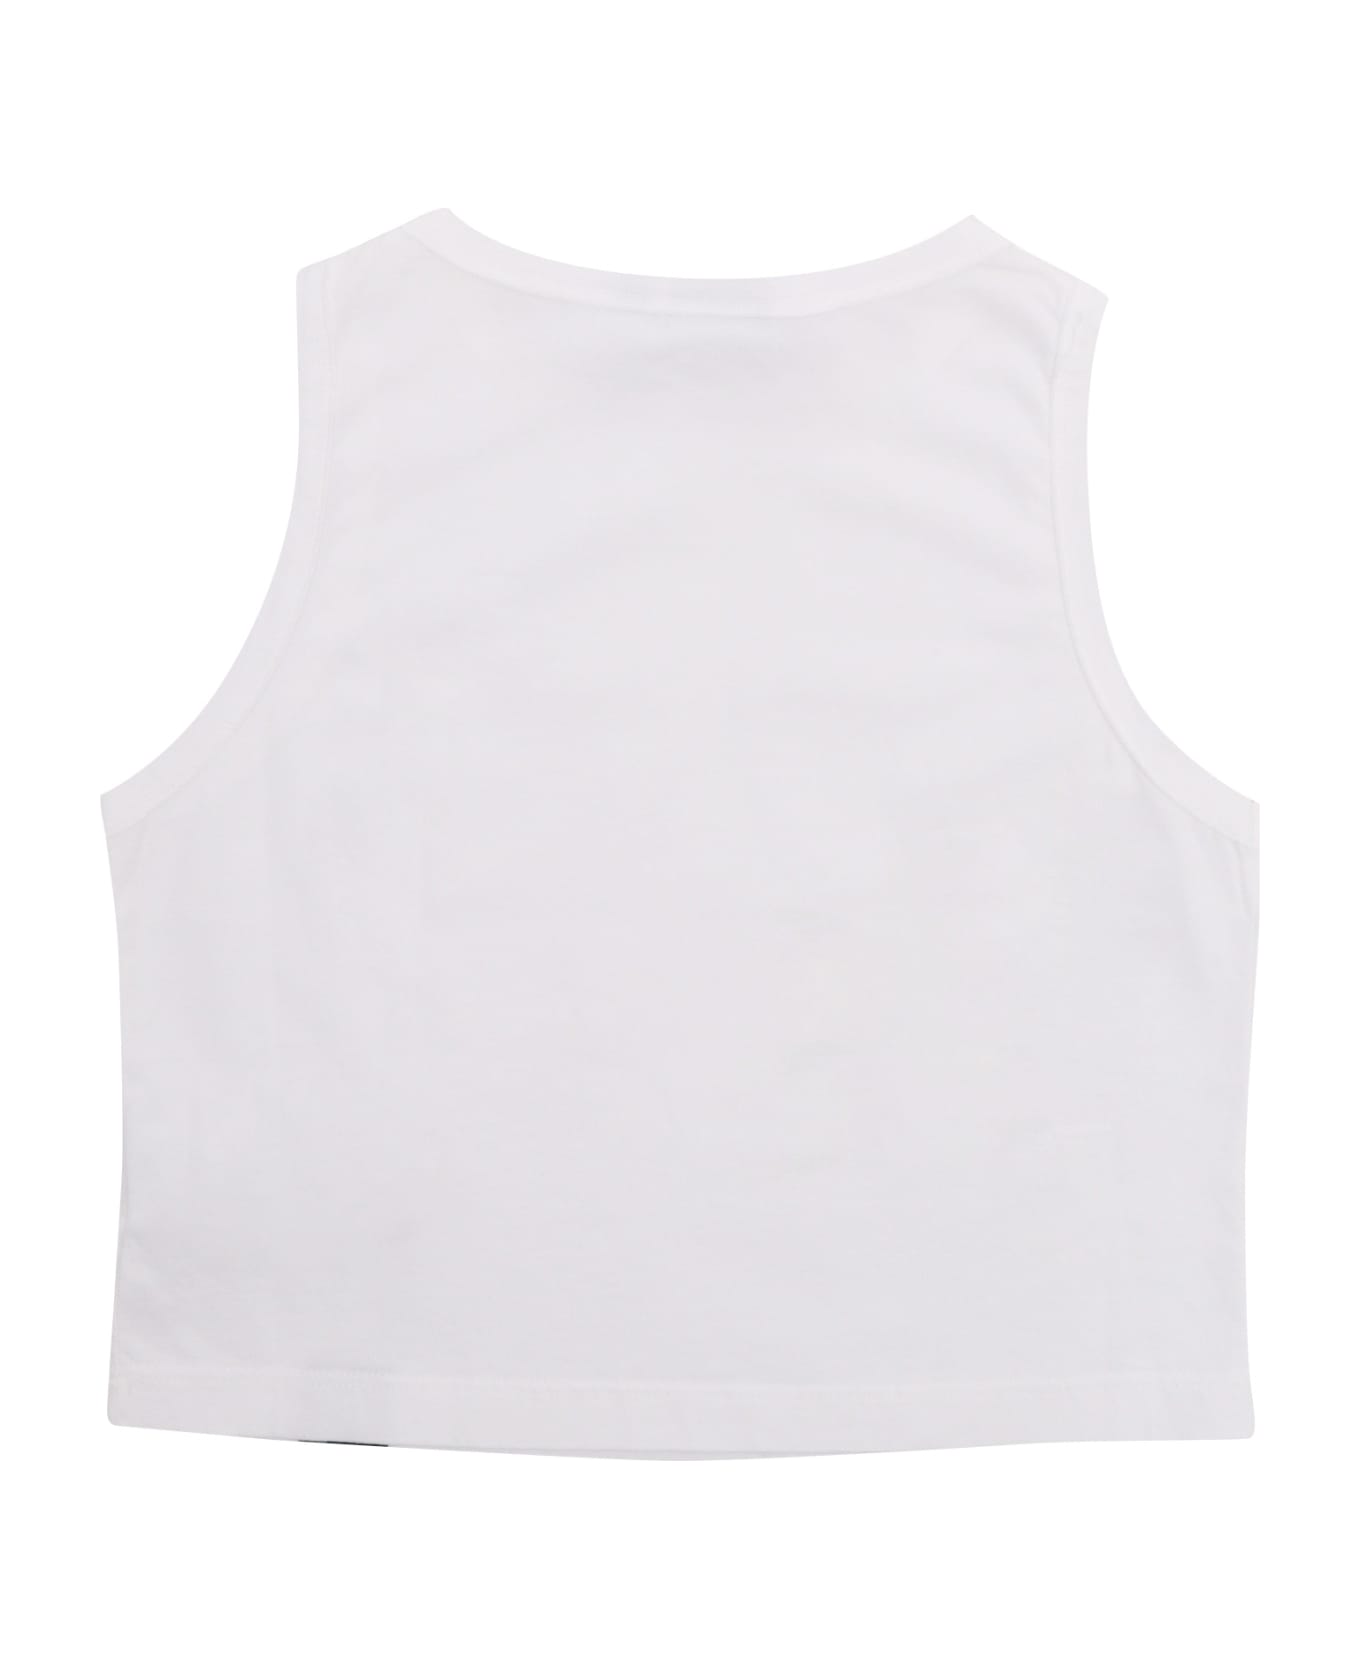 Aspesi White Cropped Tanktop - WHITE Tシャツ＆ポロシャツ